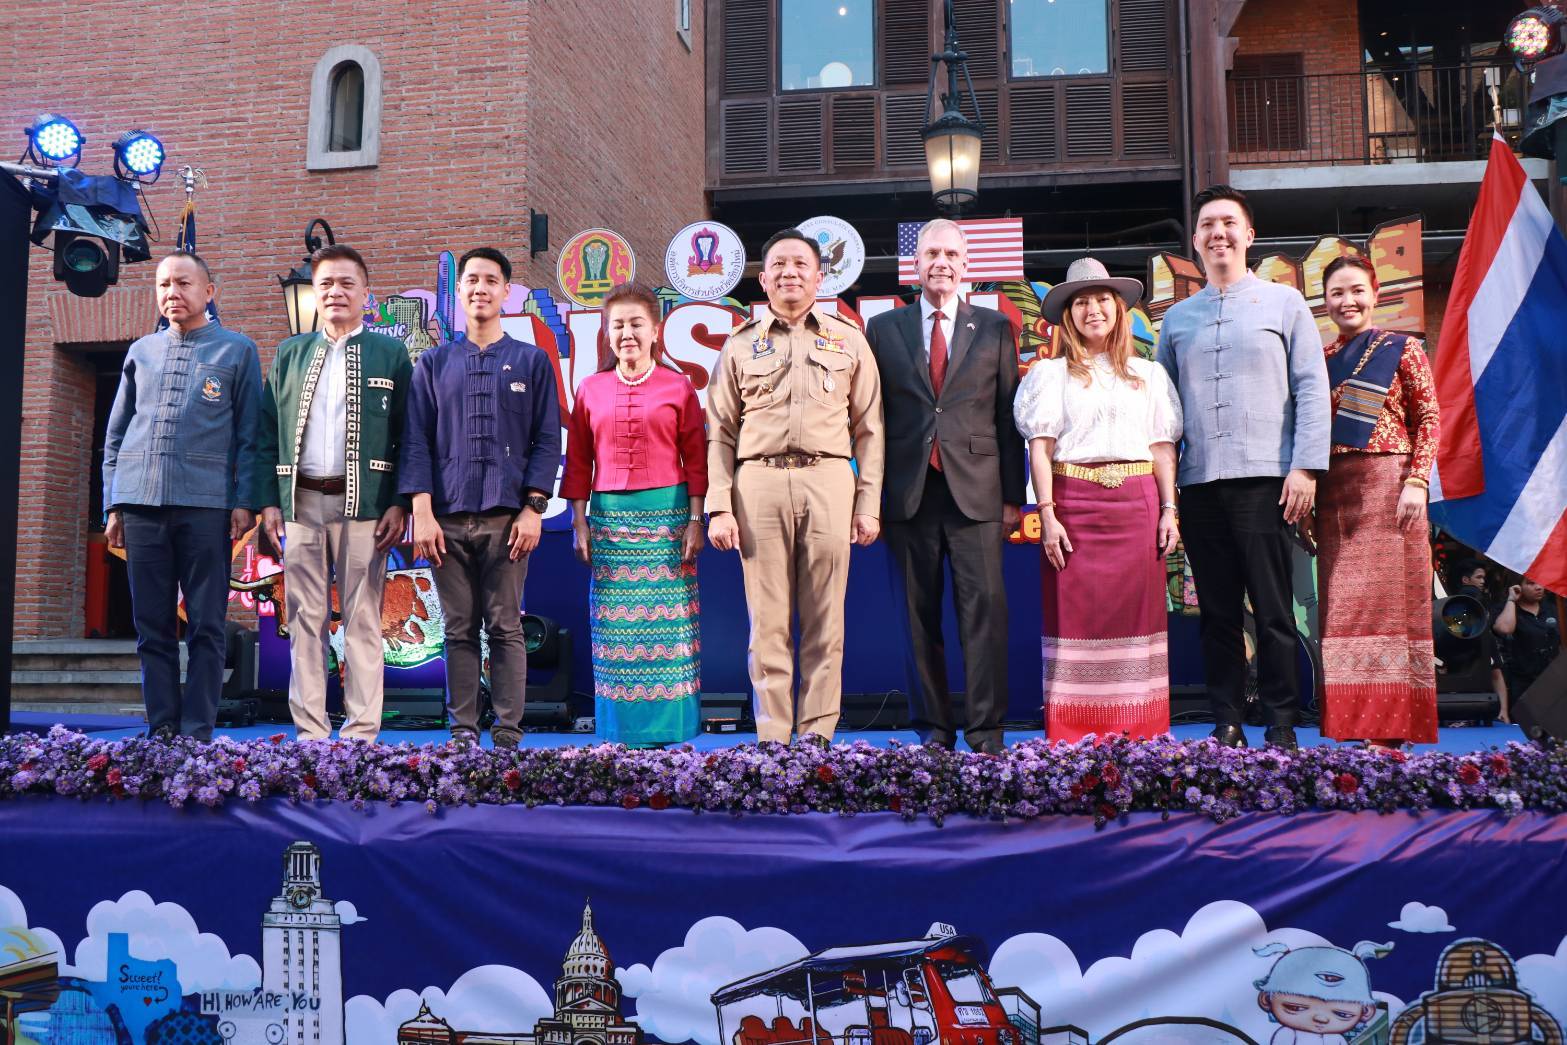 ผู้ว่าฯ เชียงใหม่ เปิดงานAustin-Chiang Mai Sister Cities สานสัมพันธ์เมืองพี่เมืองน้องระหว่างเชียงใหม่และเมืองออสติน